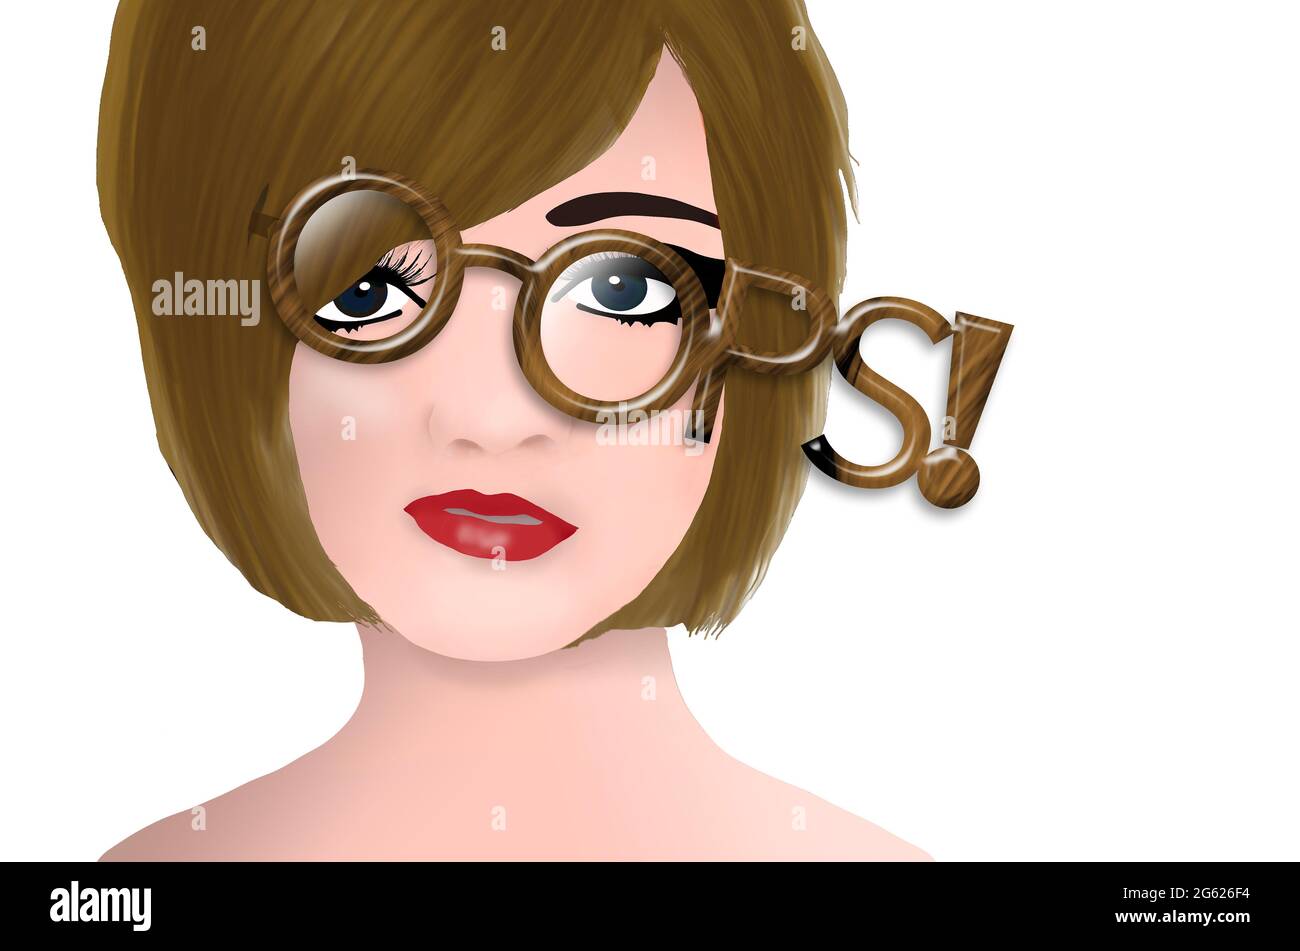 Une jeune femme porte des lunettes mal ajustées qui disent « Oups ! » dans cette 3-d illustraton au sujet de trouver les bonnes lunettes. Banque D'Images